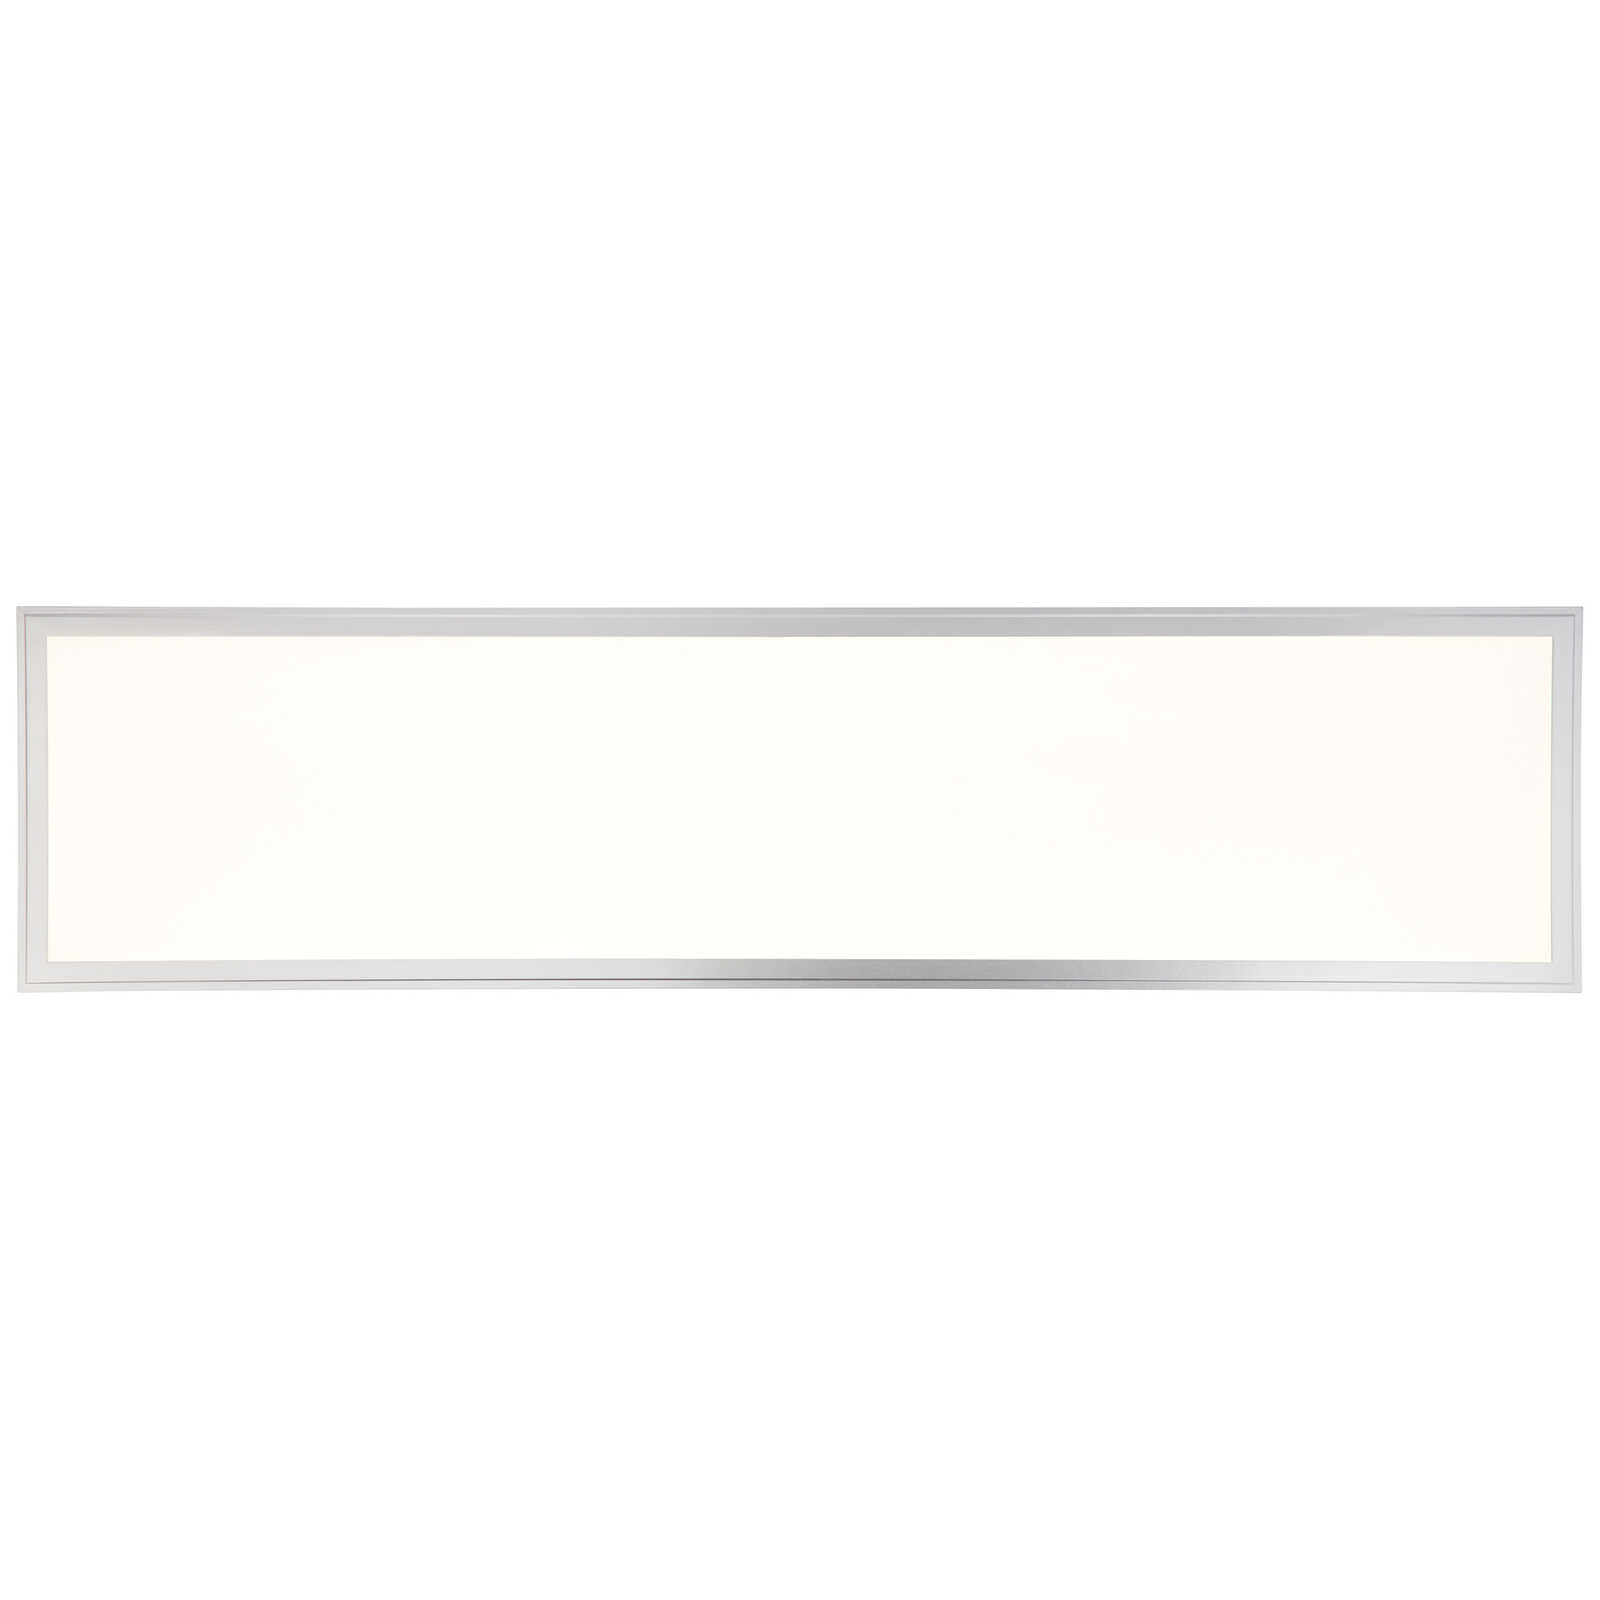             Metalen plafondlamp - Alba 3 - zilver, wit
        